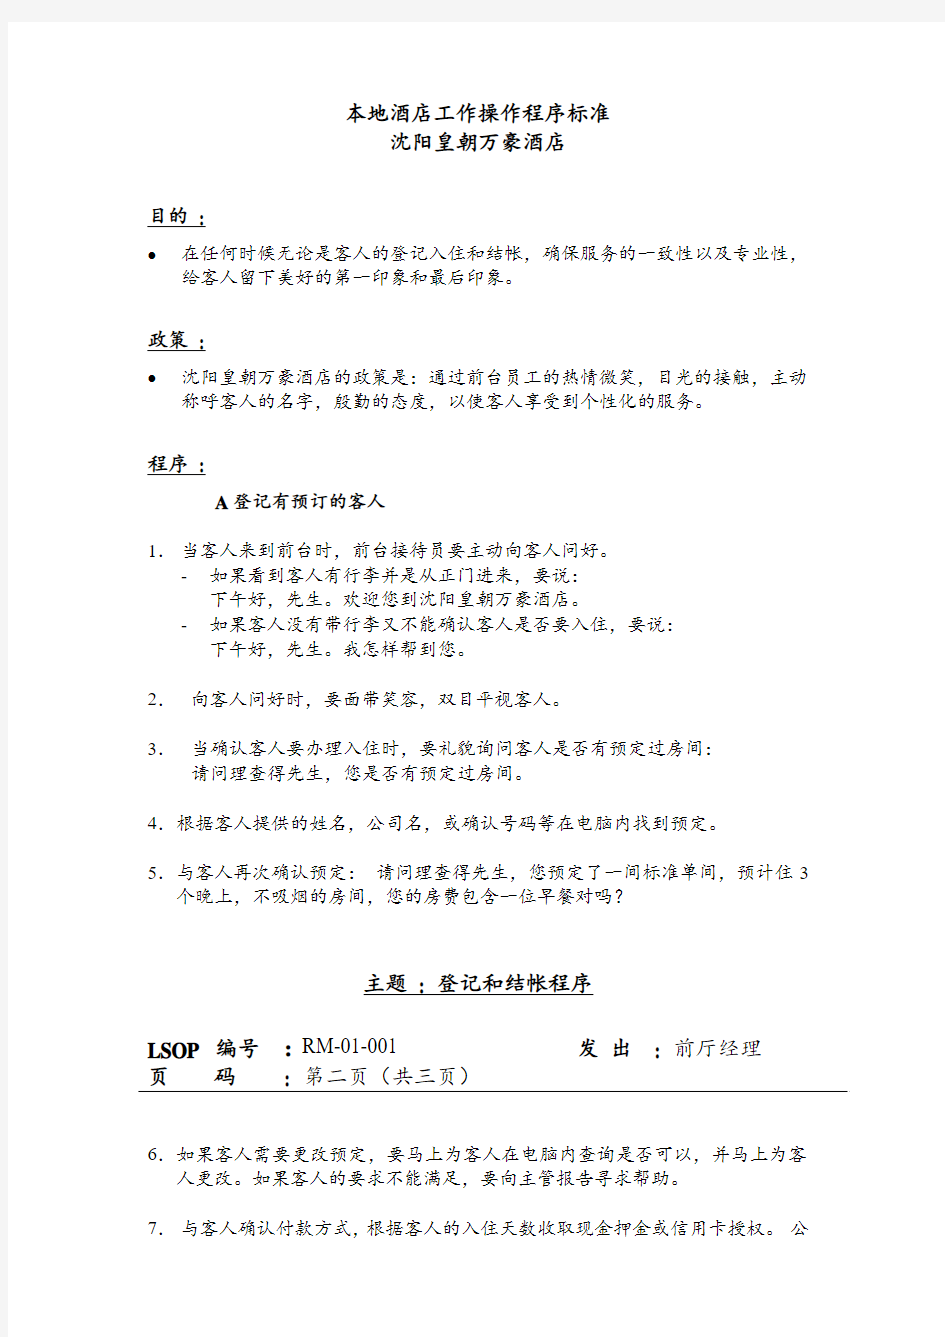 万豪酒店前厅部sop标准运作程序中文版